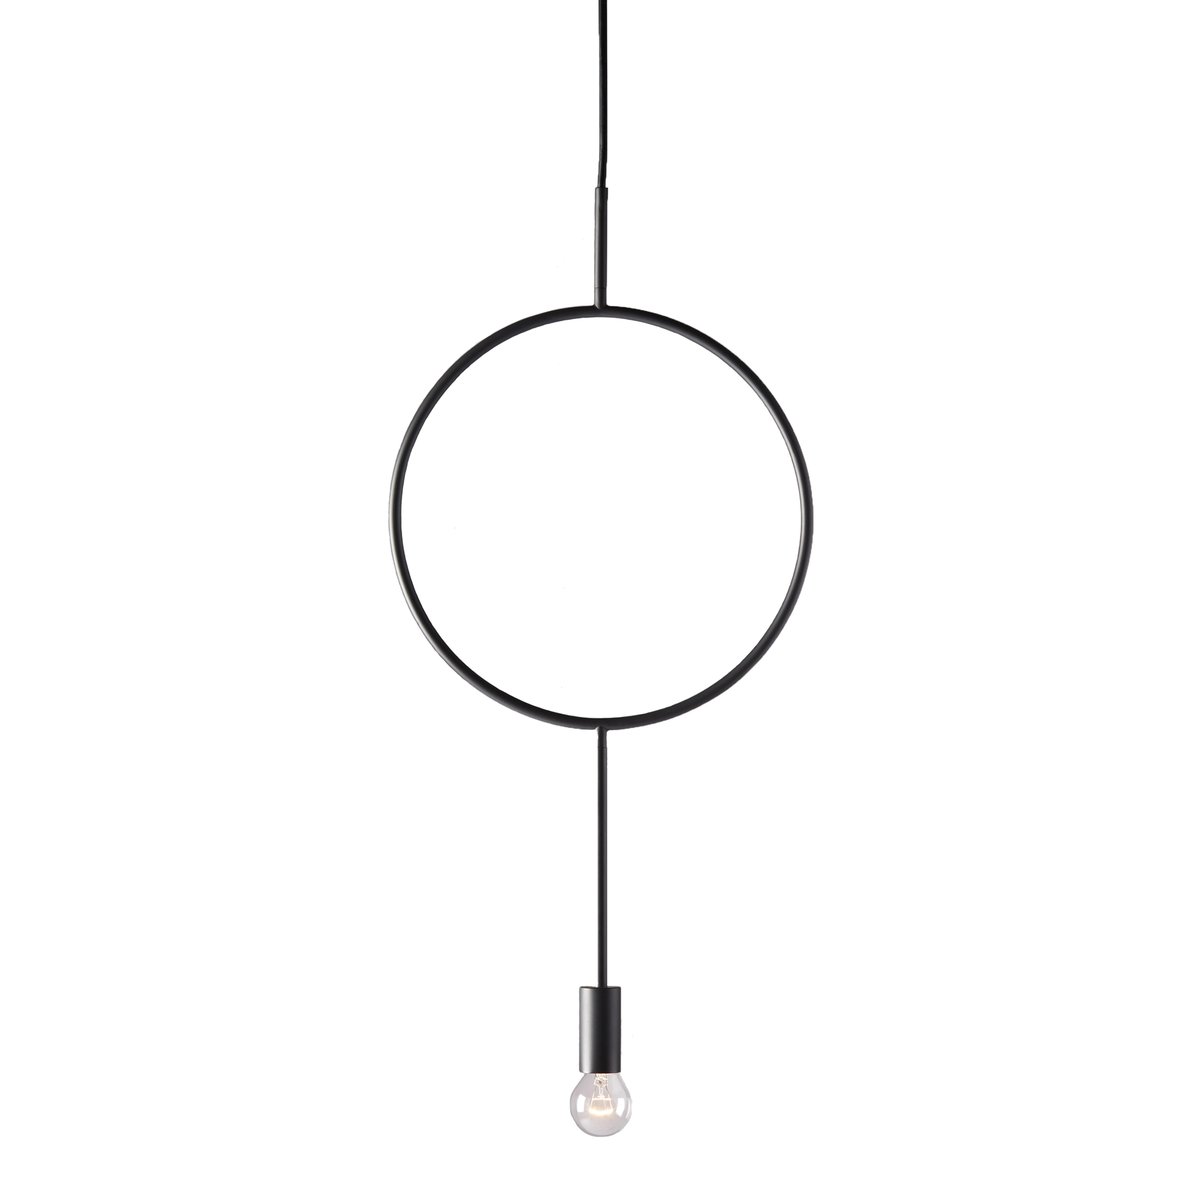 Northern Circle hanglamp zwart